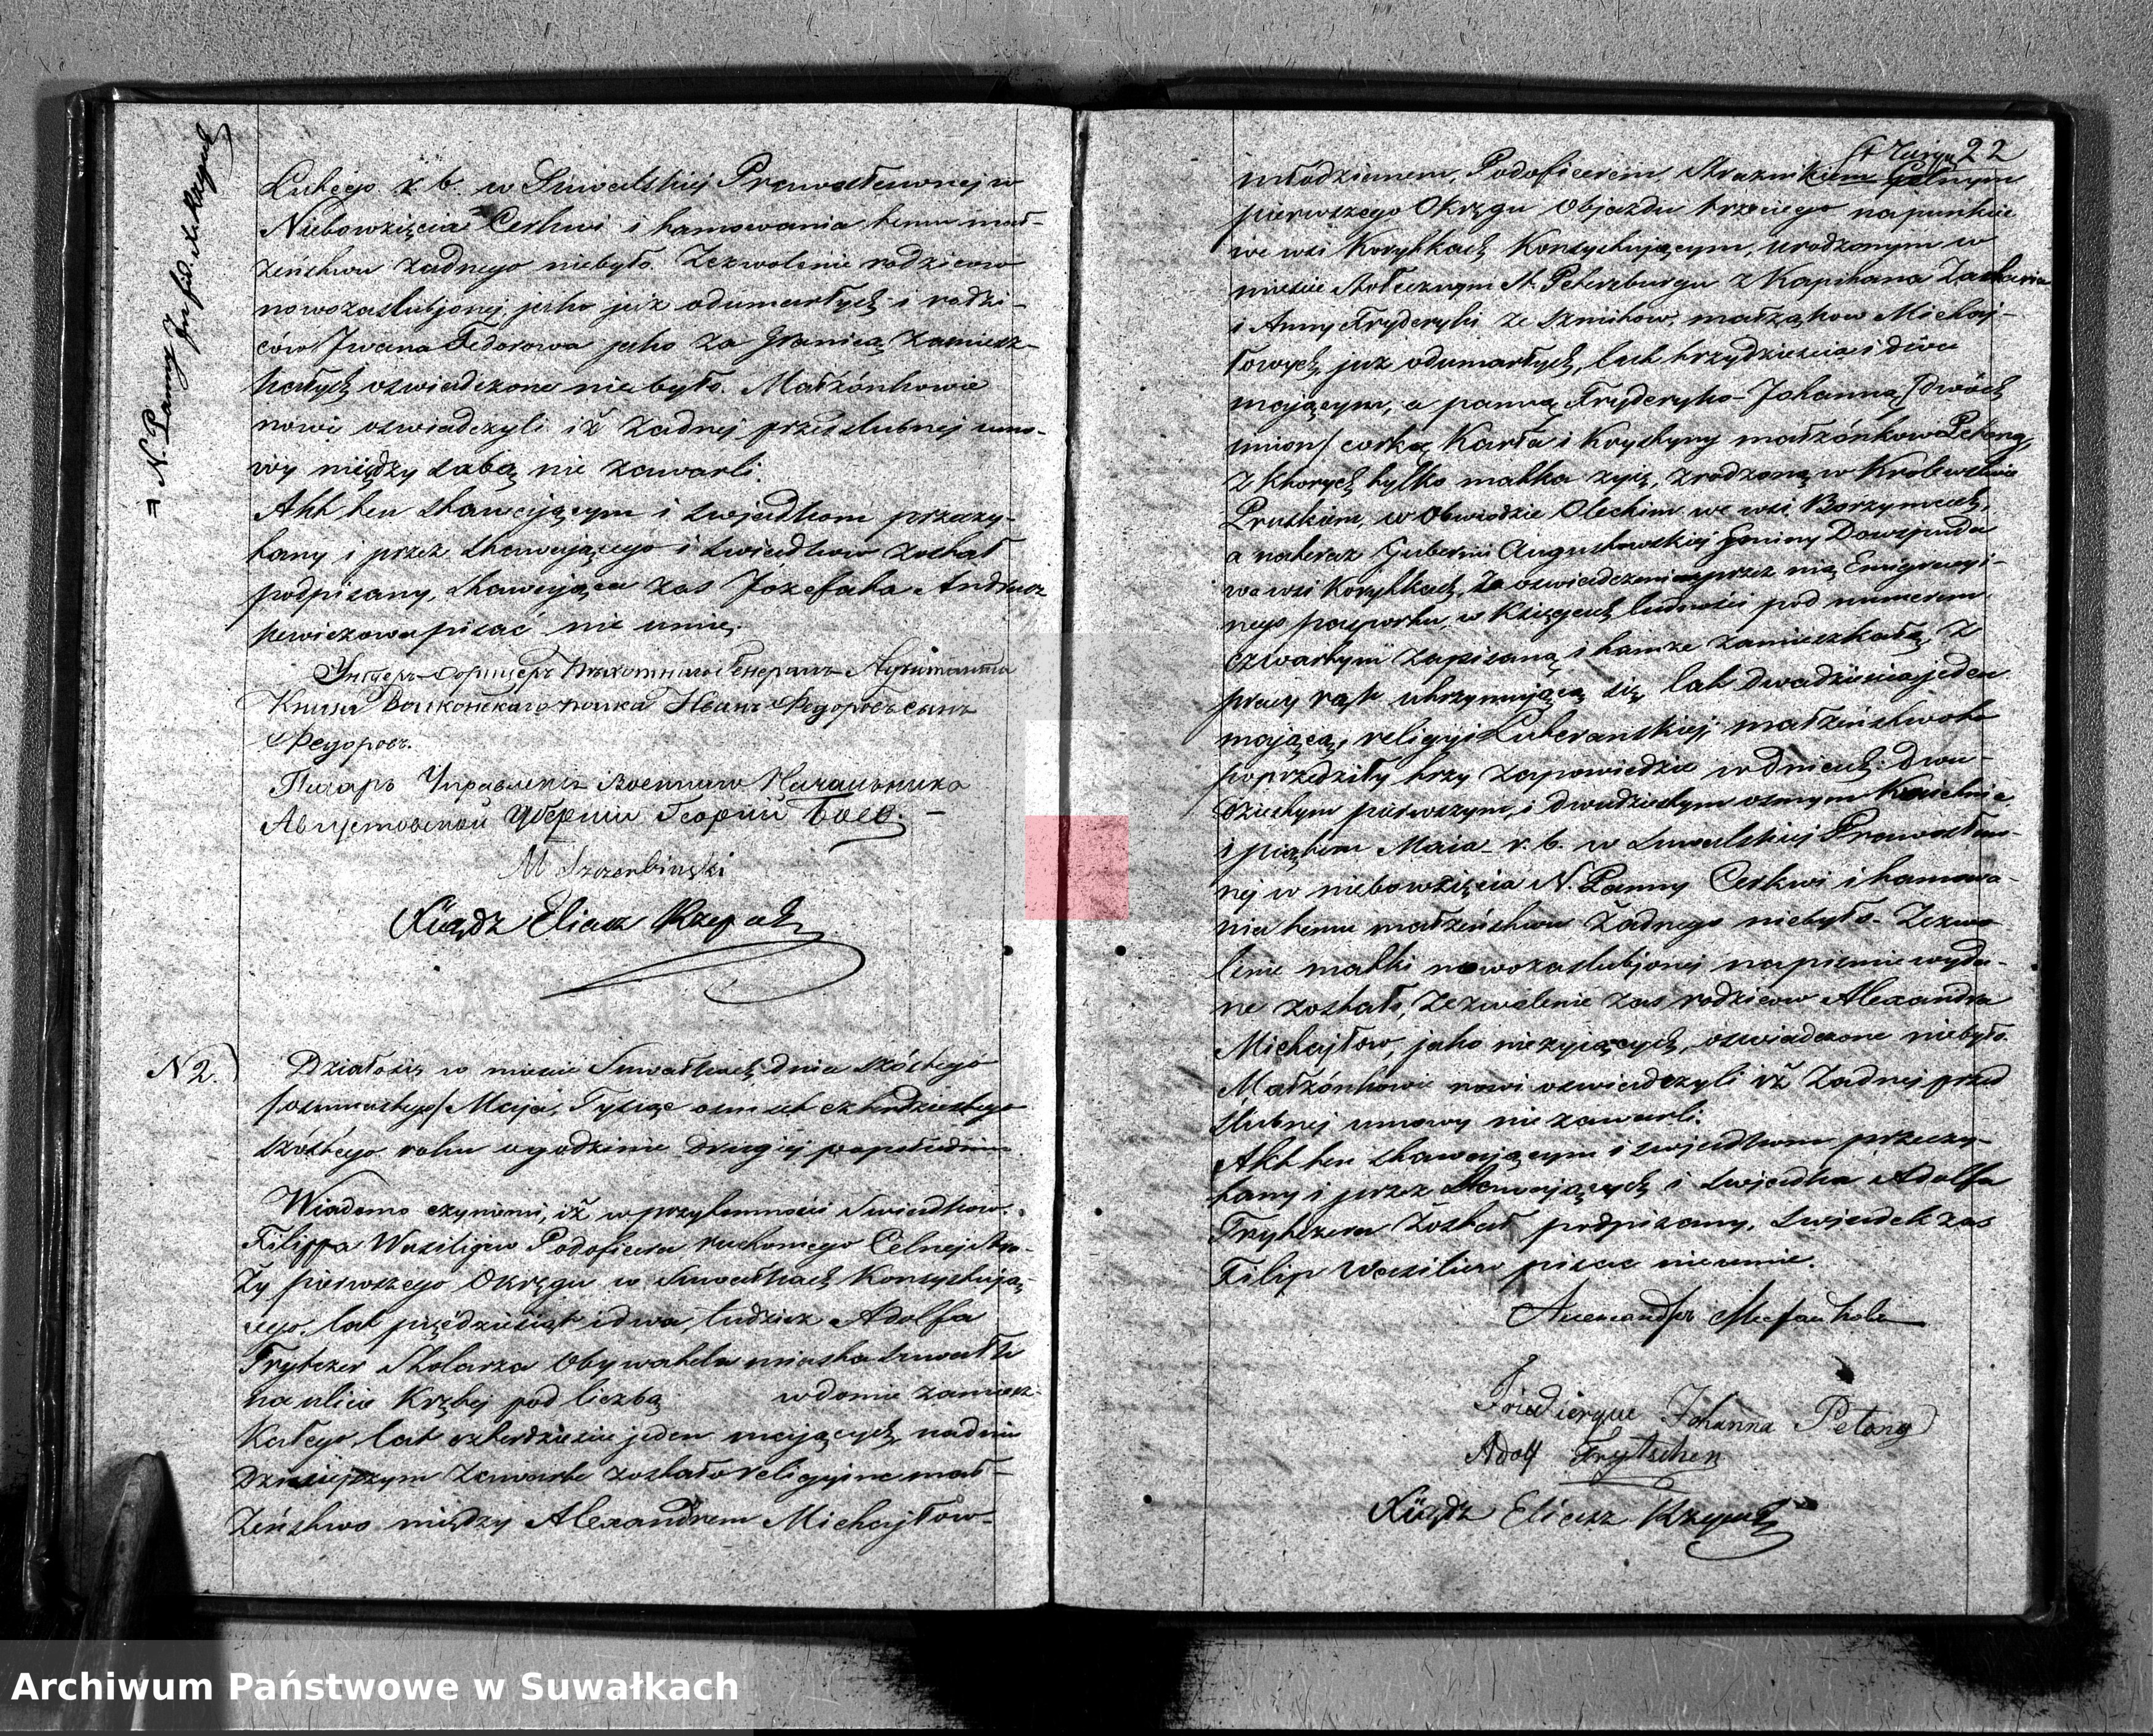 Skan z jednostki: Duplikat Aktów Stanu Cywilnego Suwalskiej Prawosławnej Cerkwi za 1846 r.